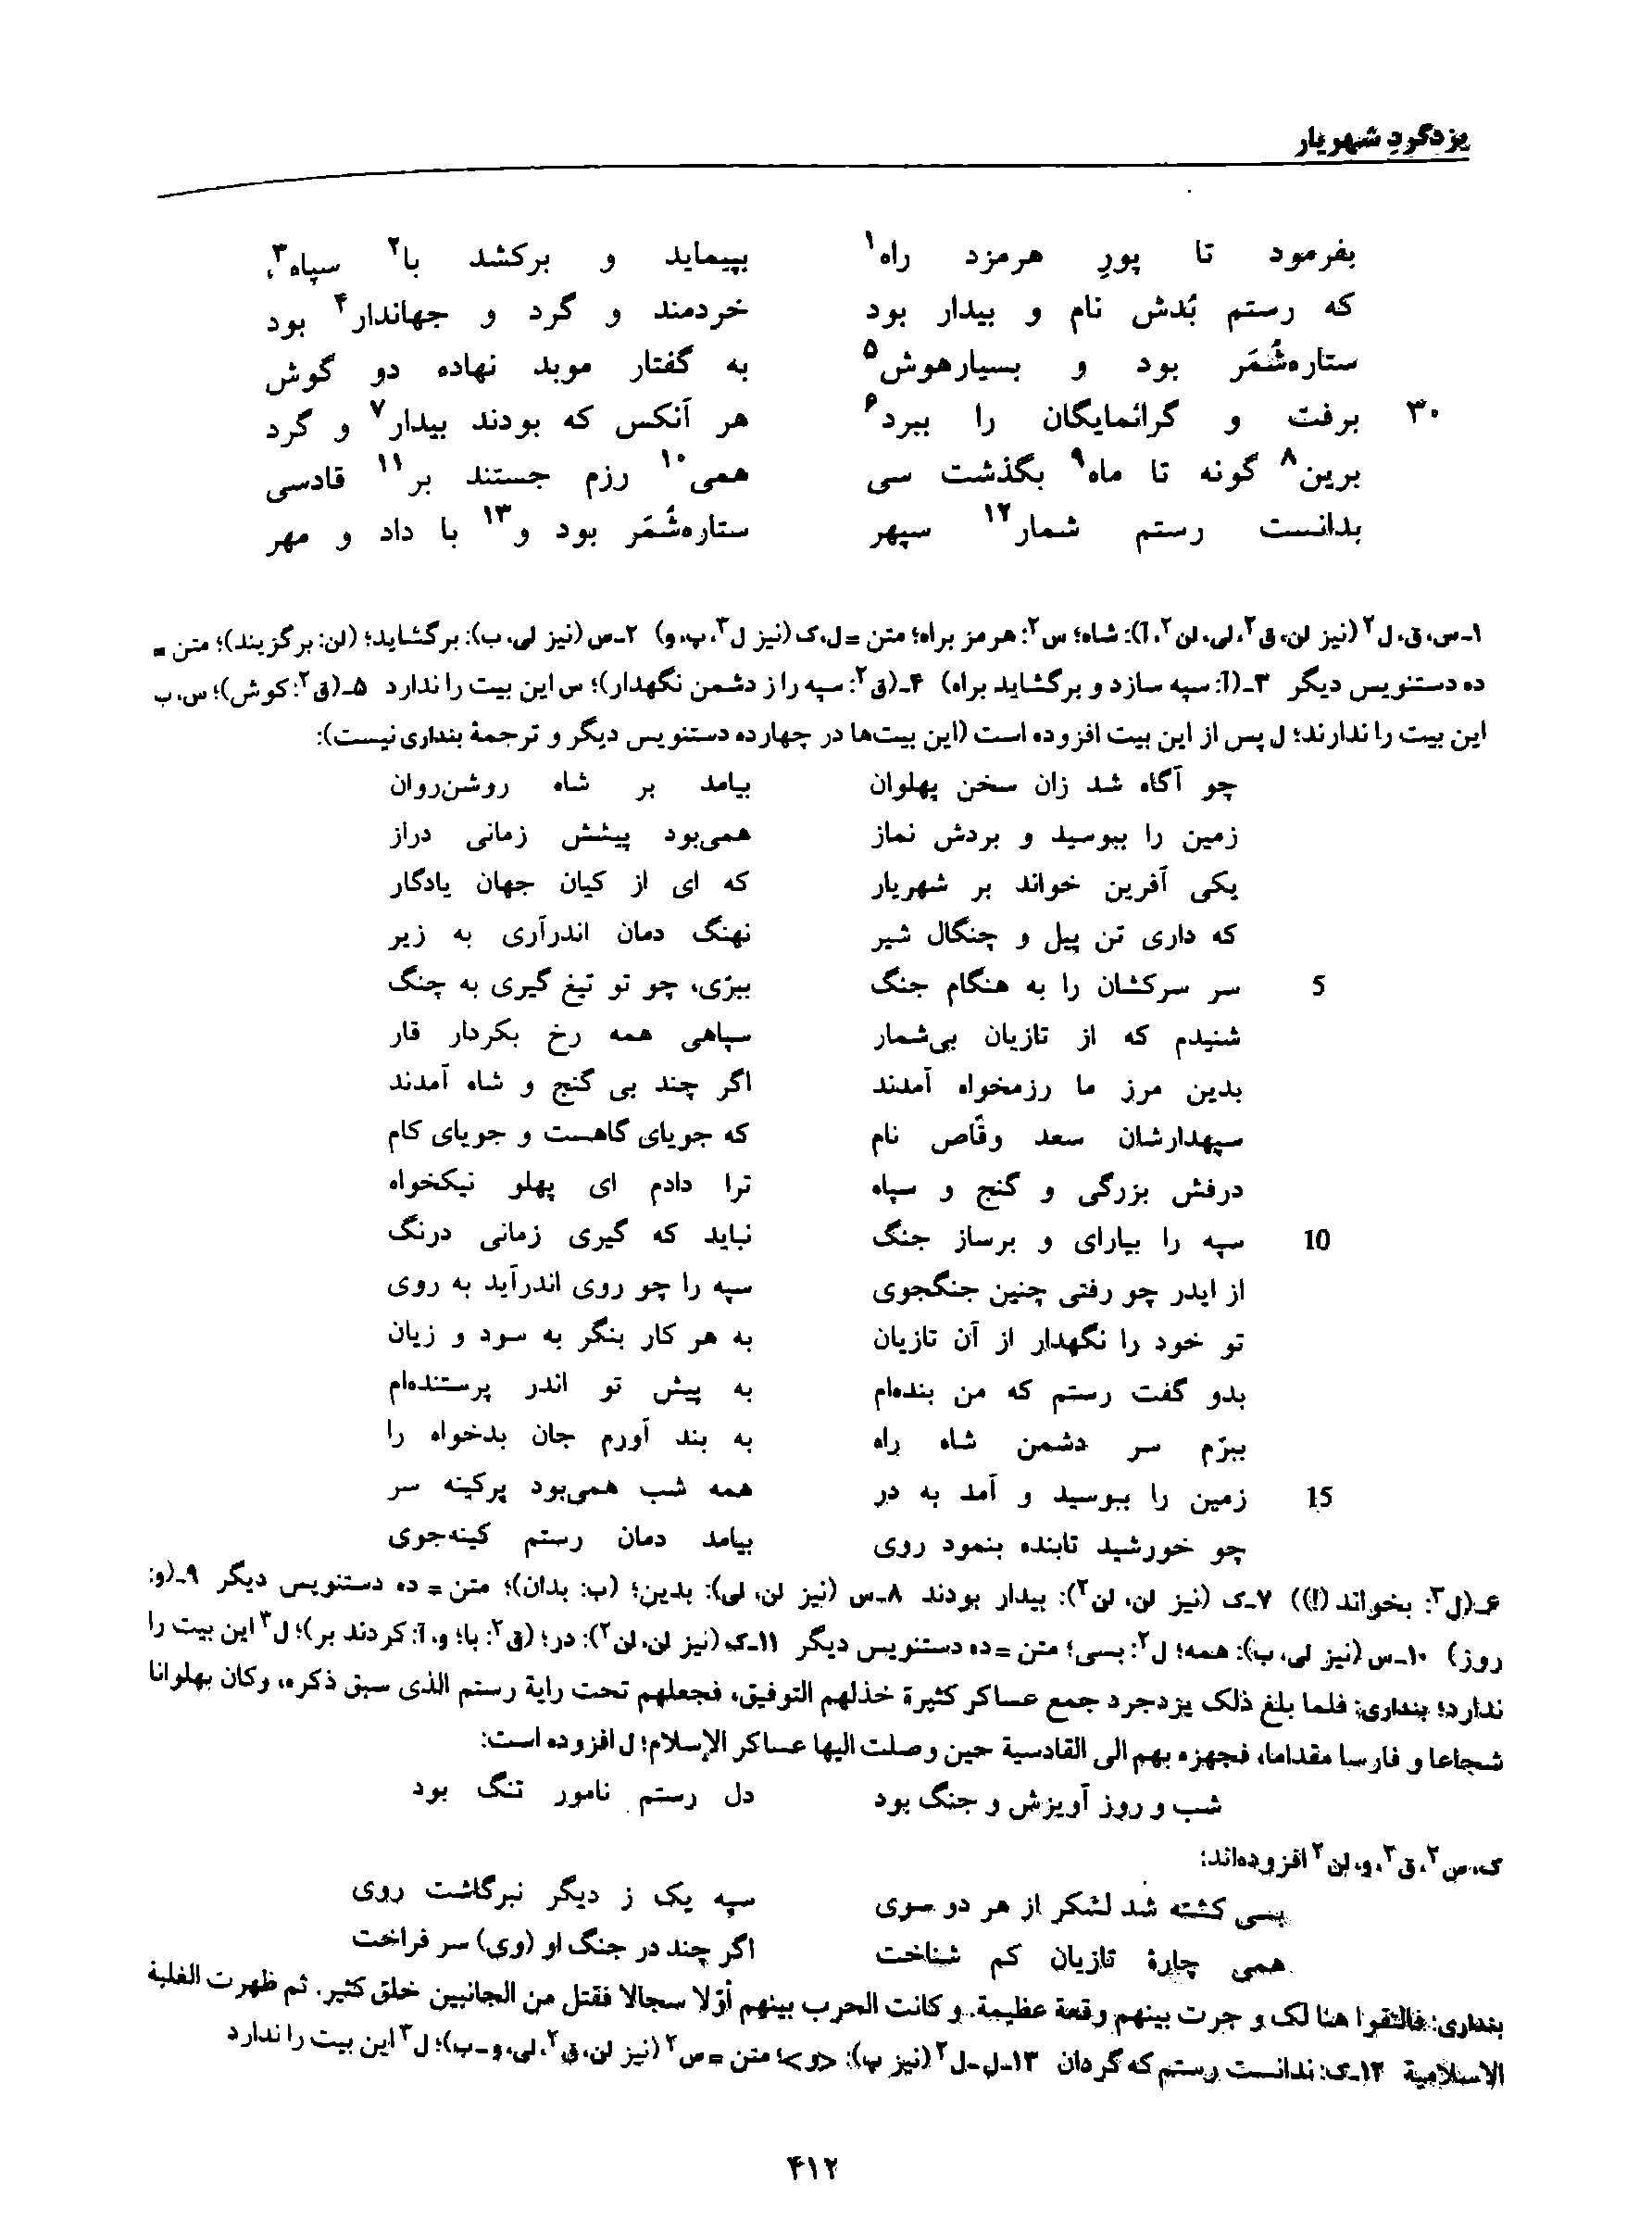 vol. 8, p. 412